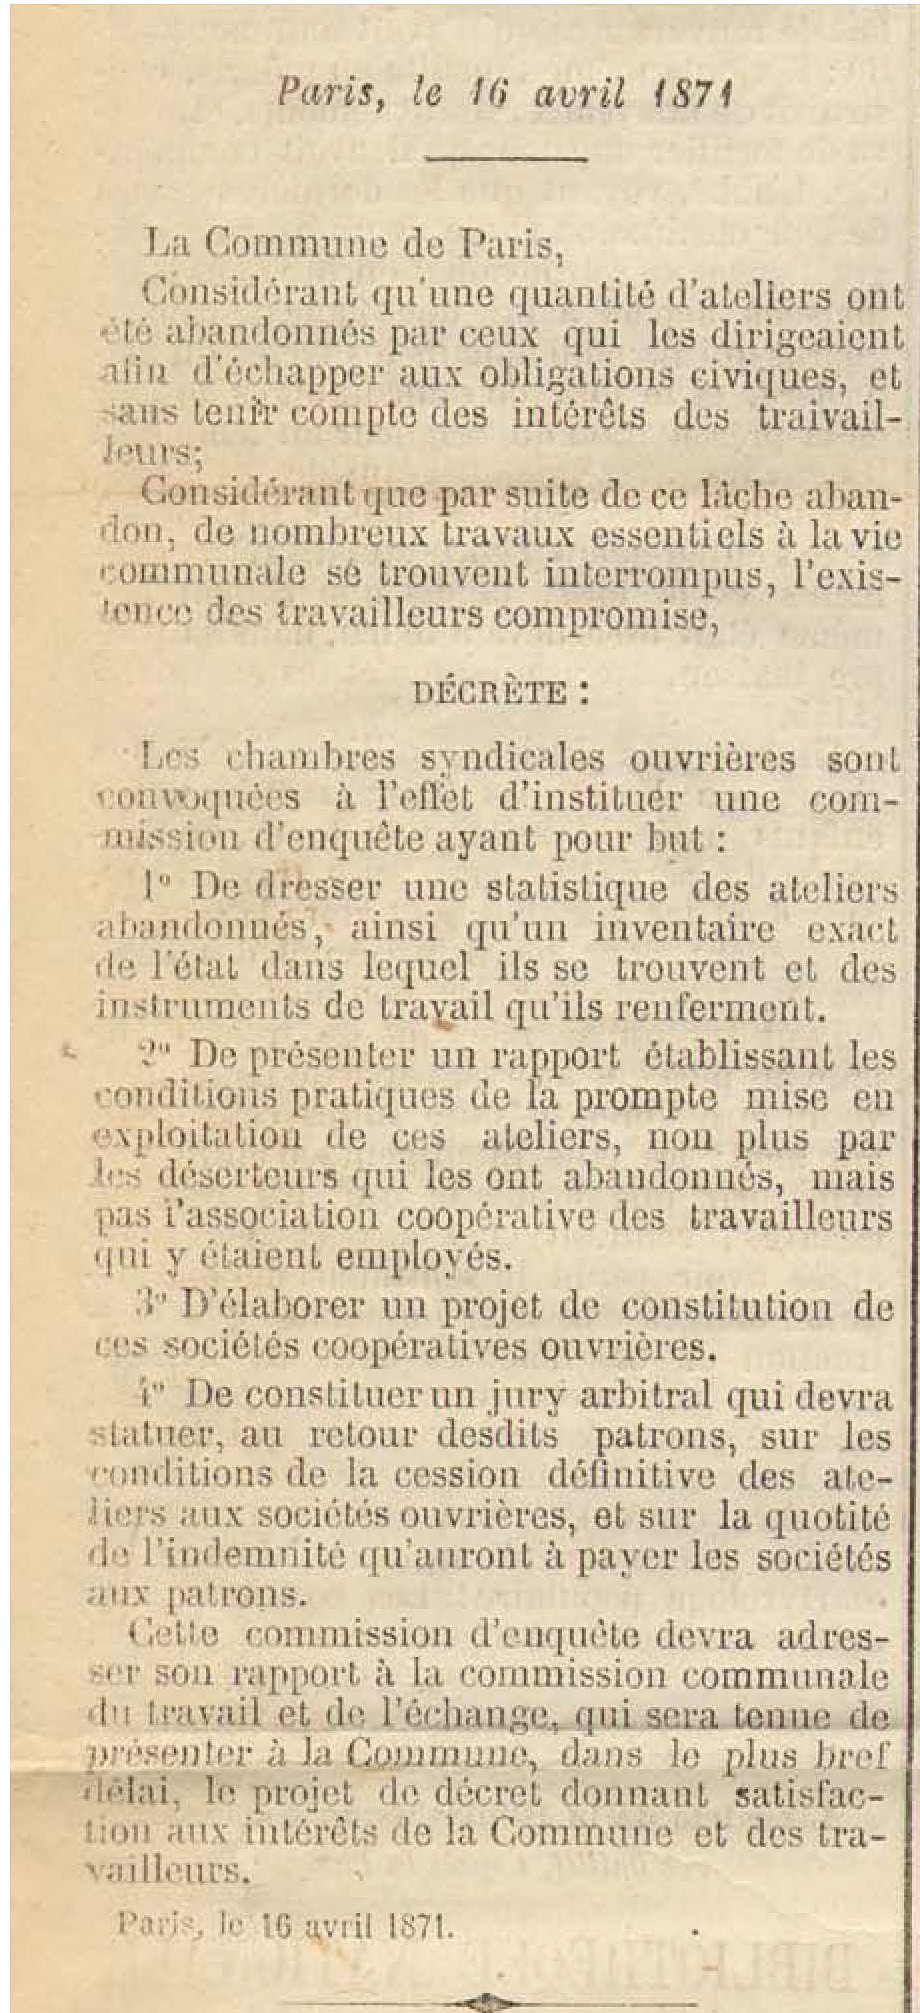 Journal Officiel de la Commune du 17 avril 1871 - Décret du 16 avril